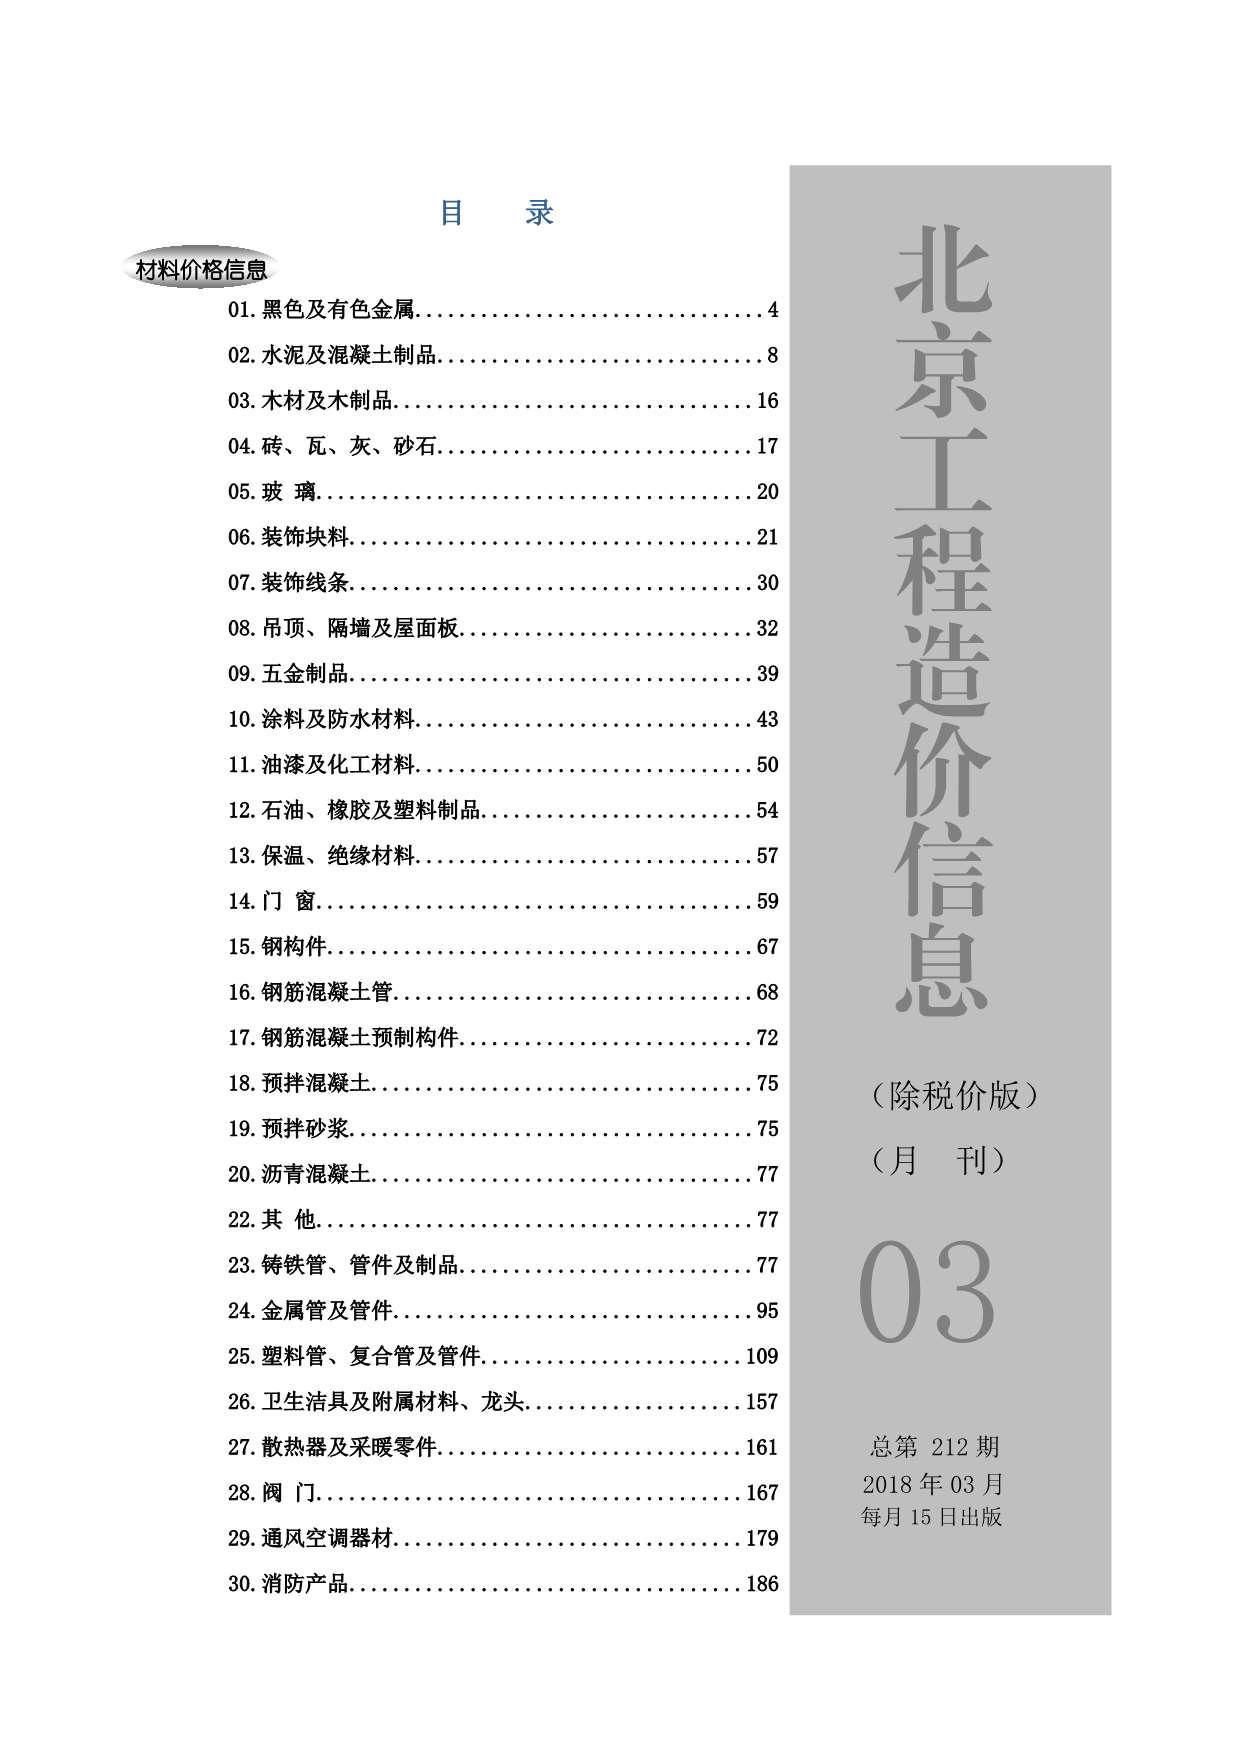 2018年3期北京除税价版造价库文档